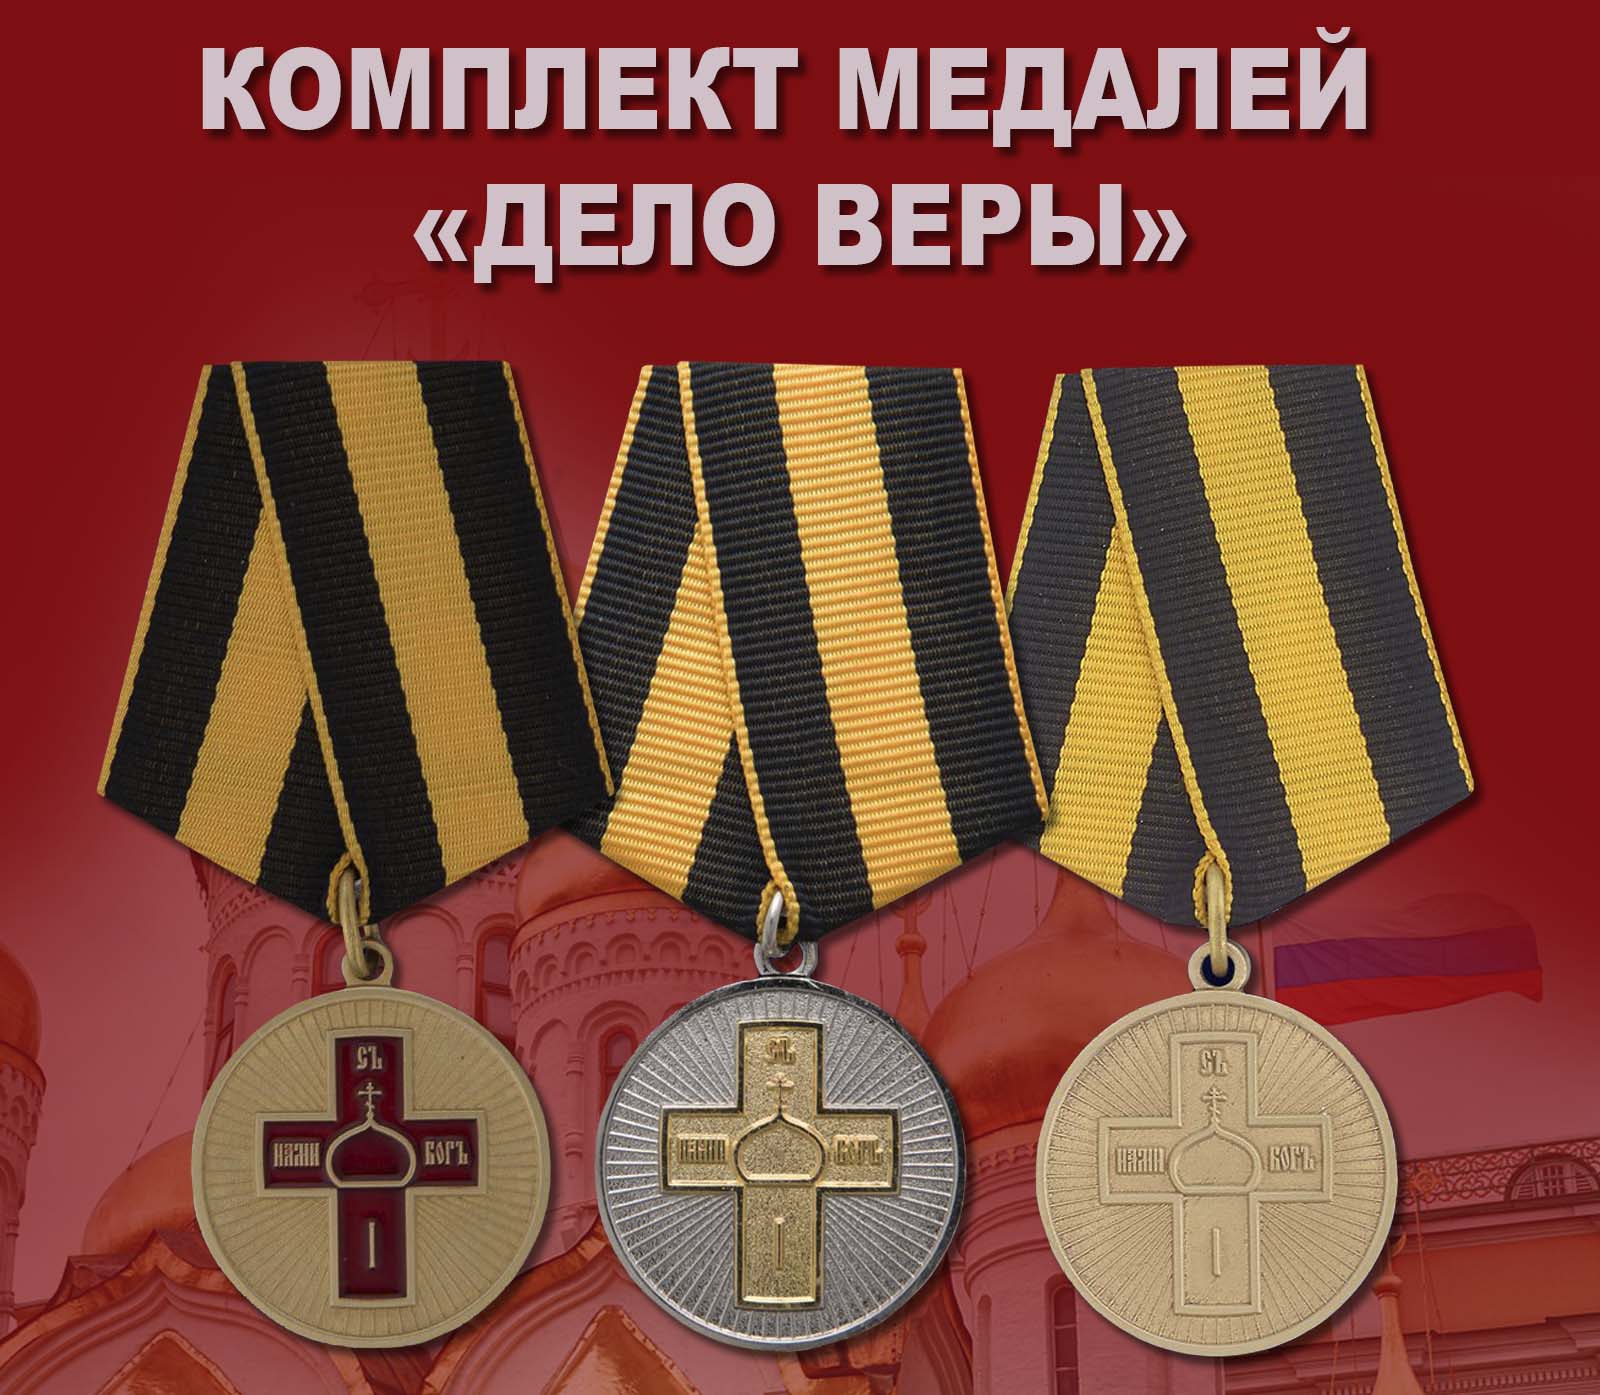 Купить комплект медалей "Дело Веры"